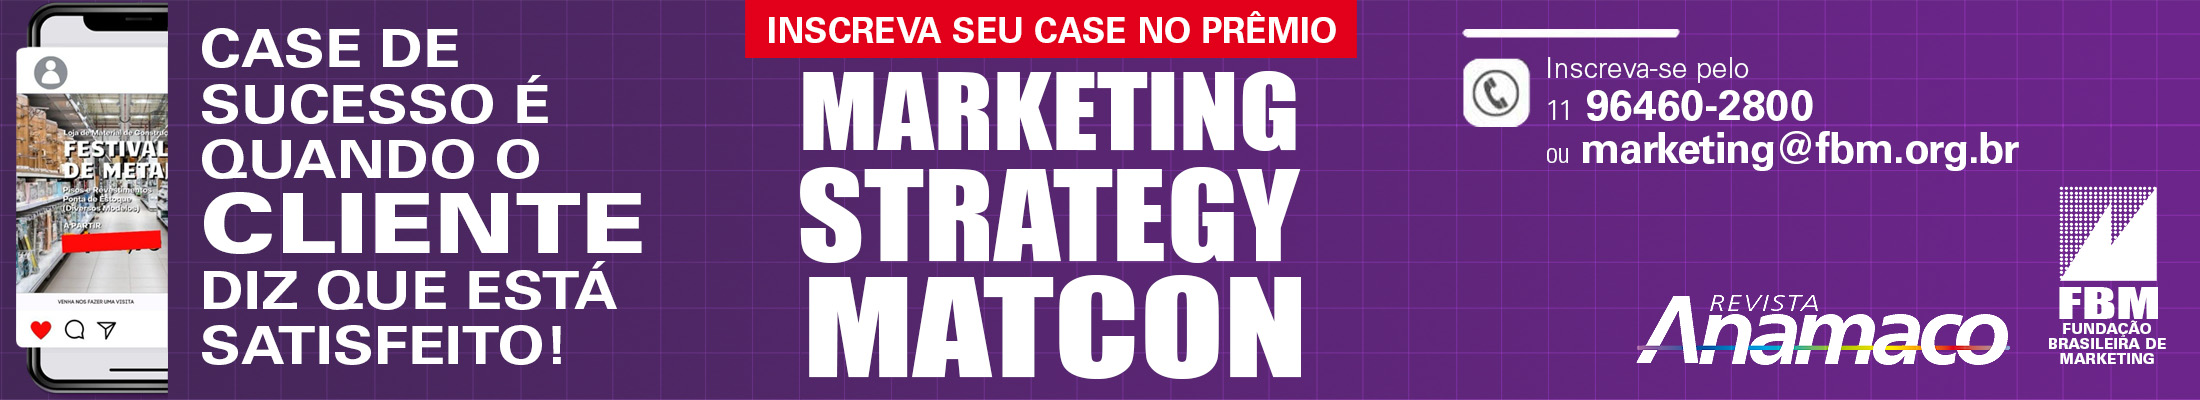 Cinta Prêmio Marketing Strategy Matcon